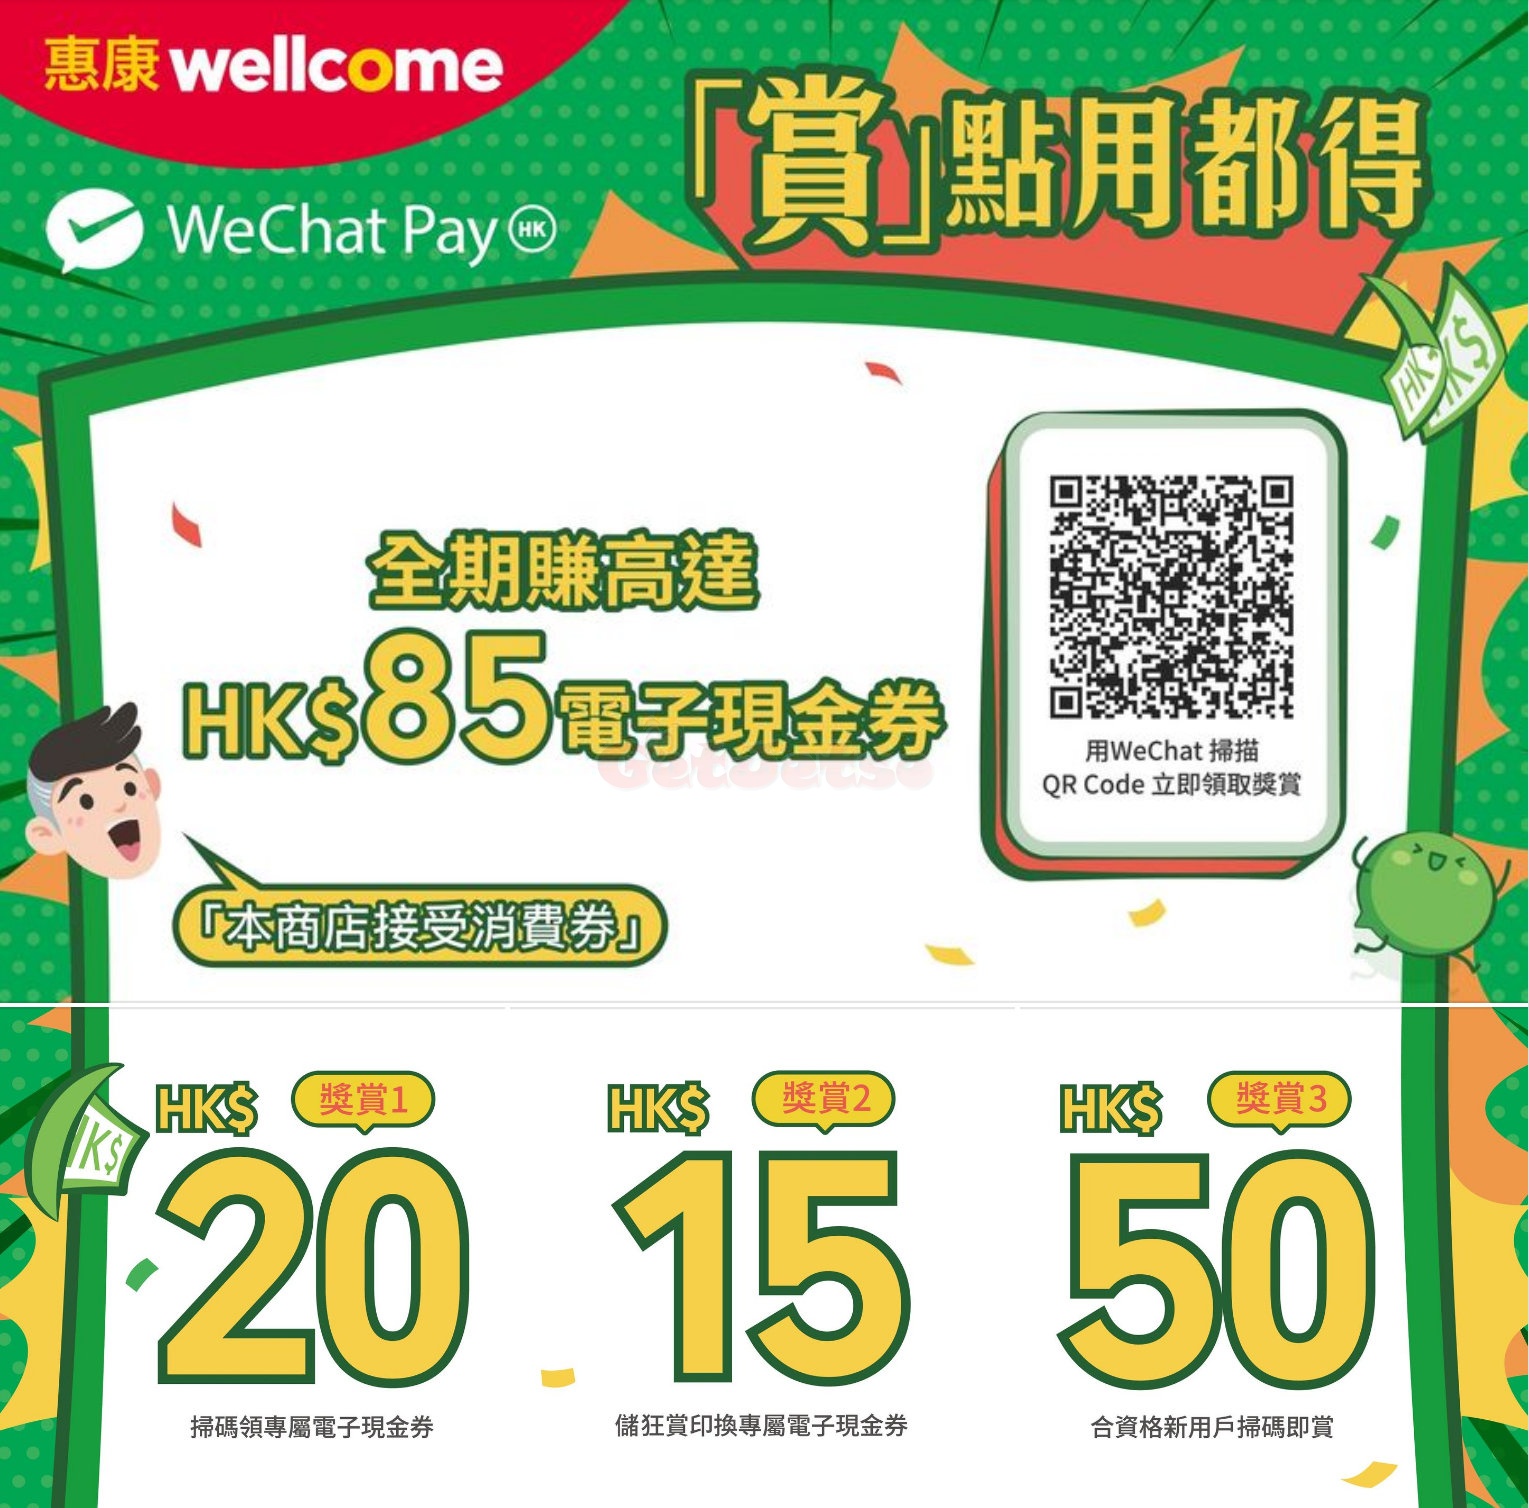 惠康掃QR Ccode 送現金券優惠@WeChat Pay(至22年7月14日)圖片1